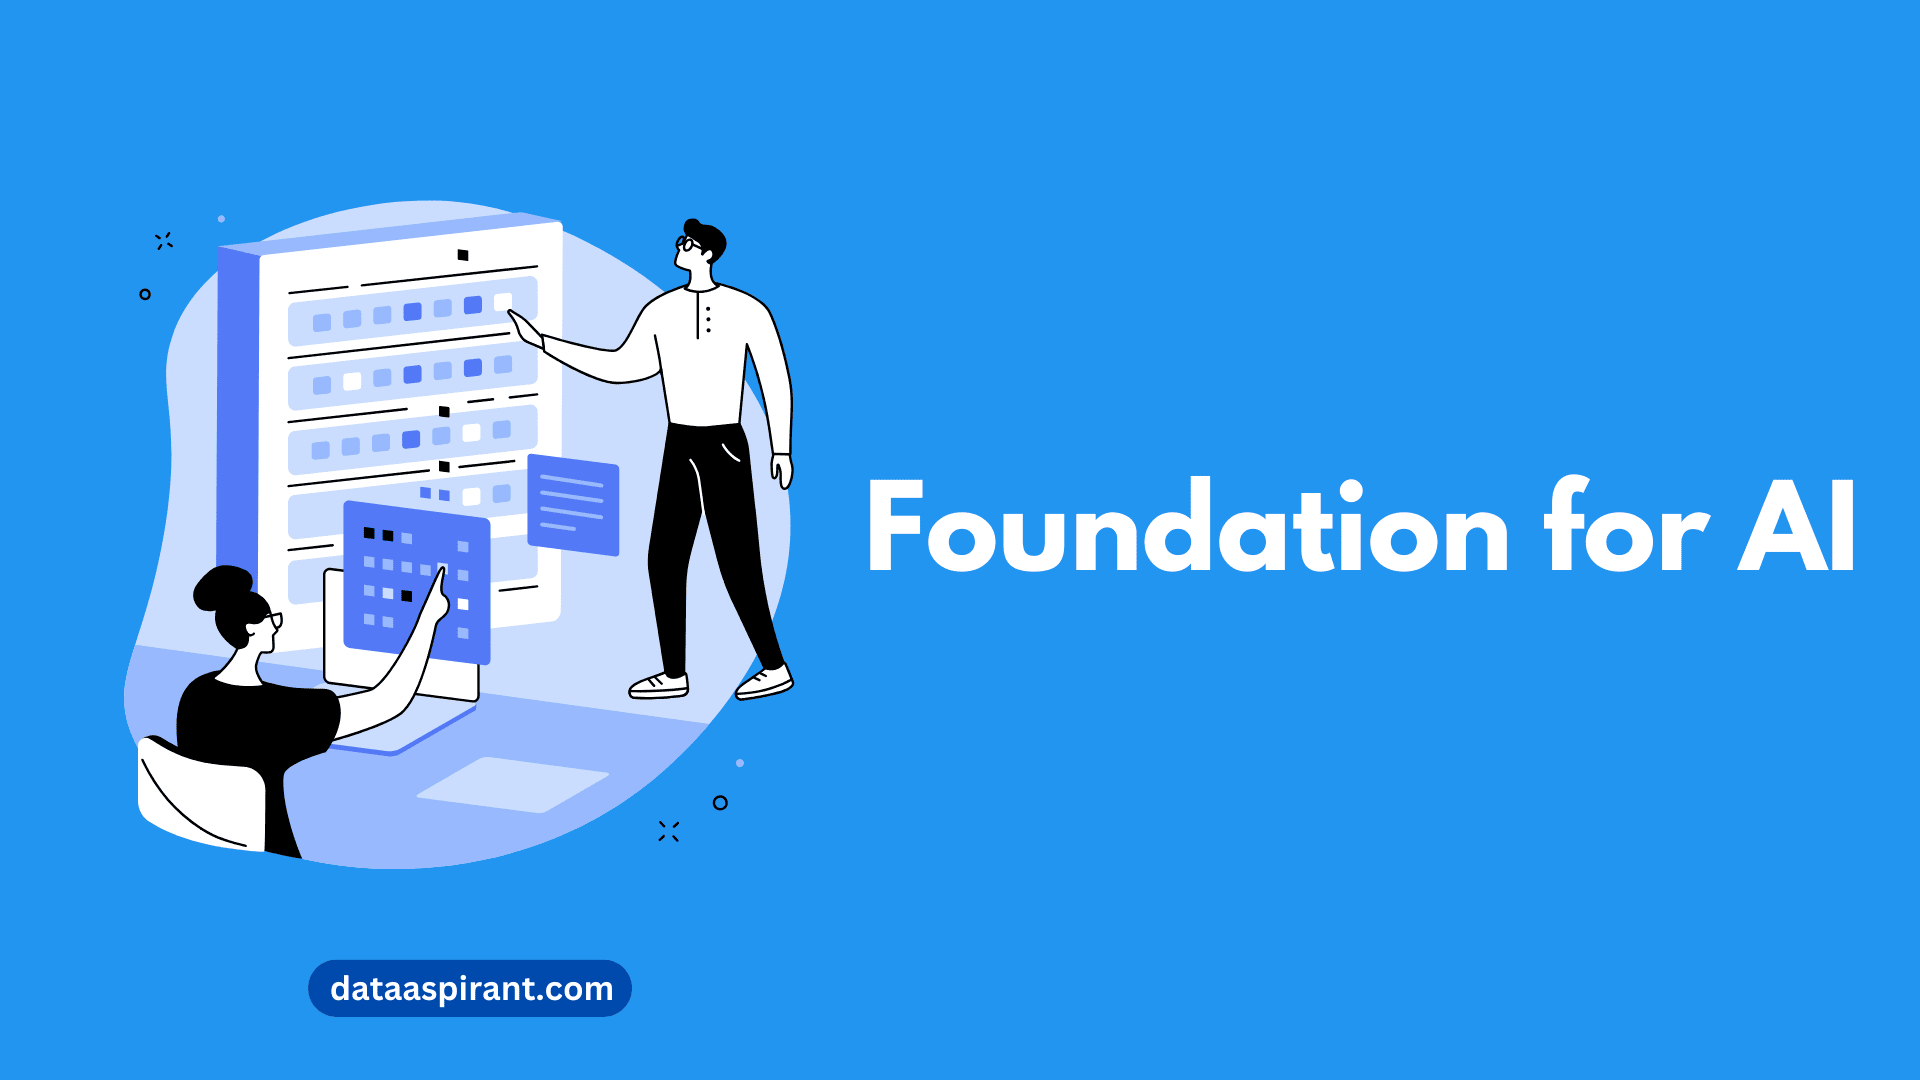 Foundation for AI